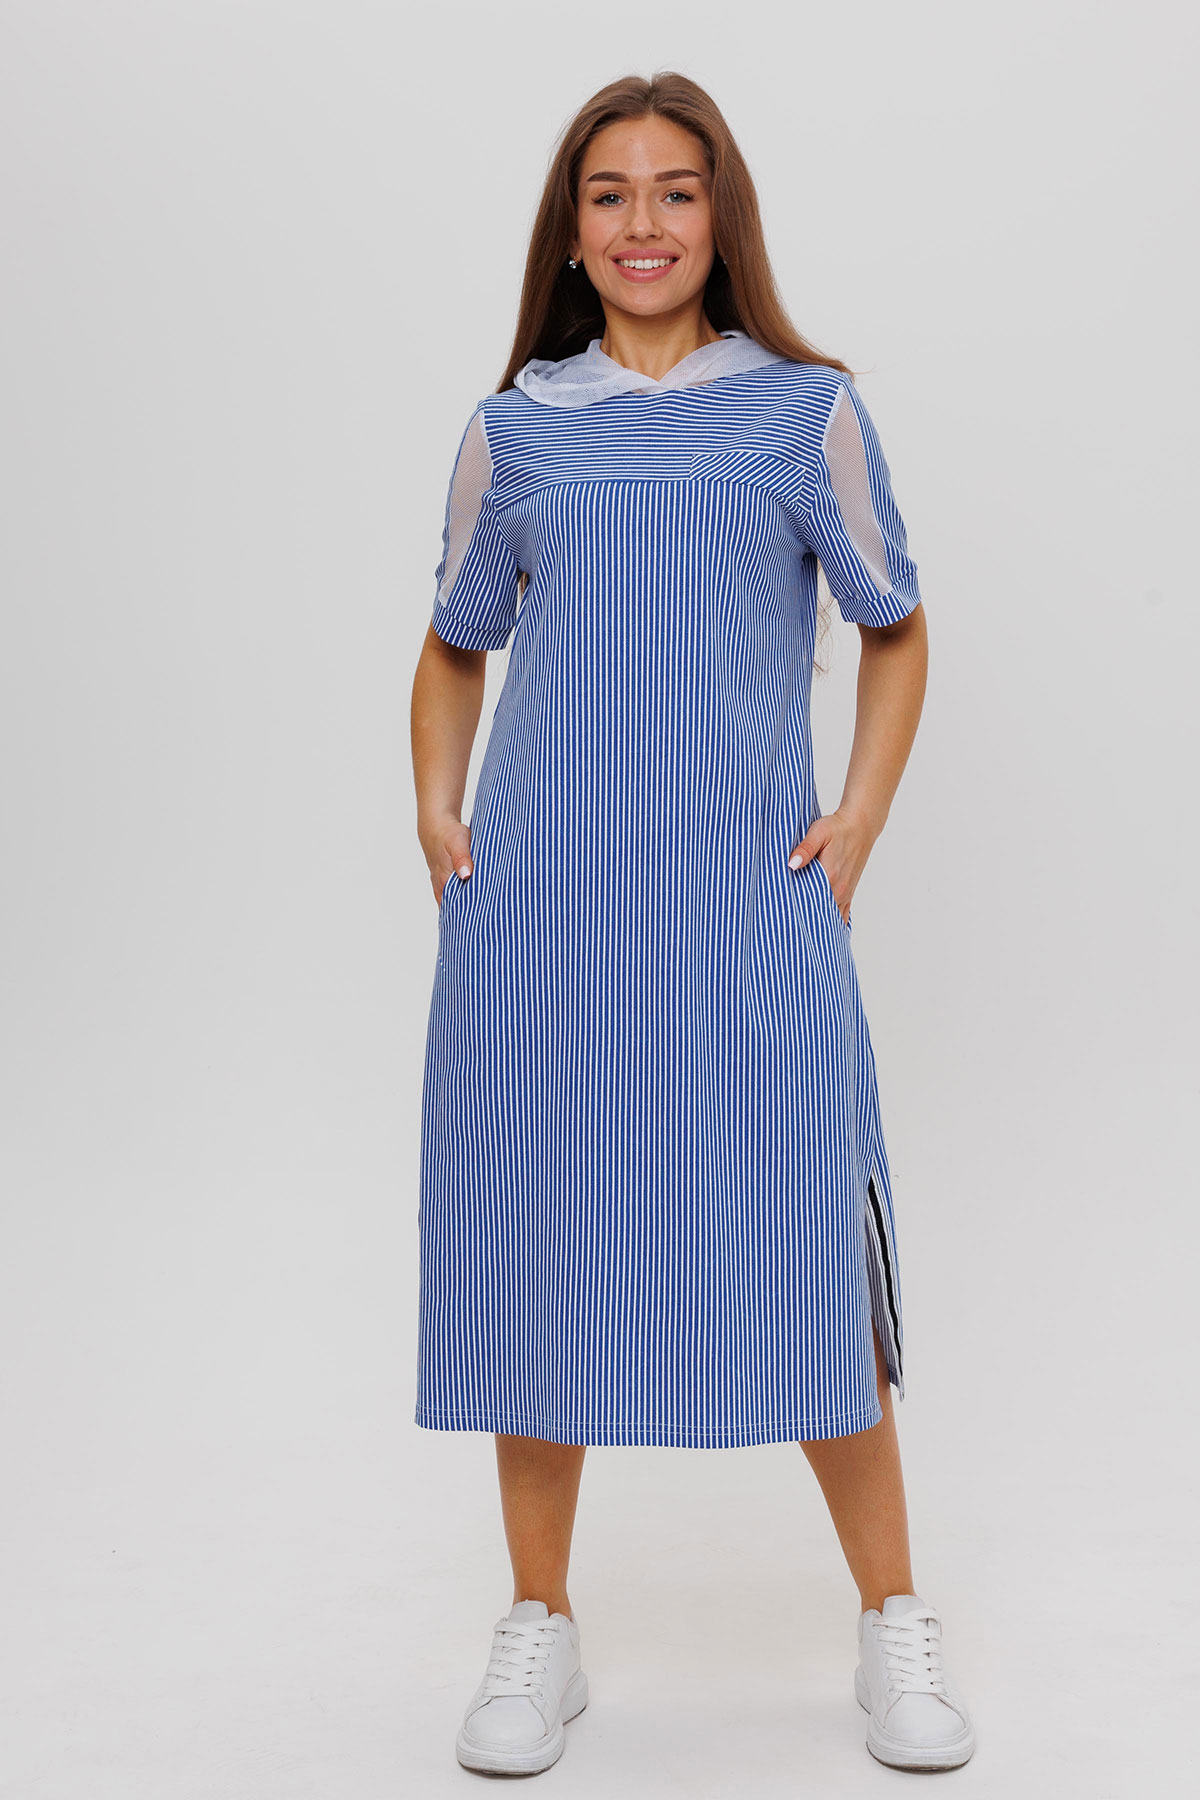 Жен. платье повседневное арт. 23-0543 Синий р. 52 Моделлини, размер 52 - фото 1